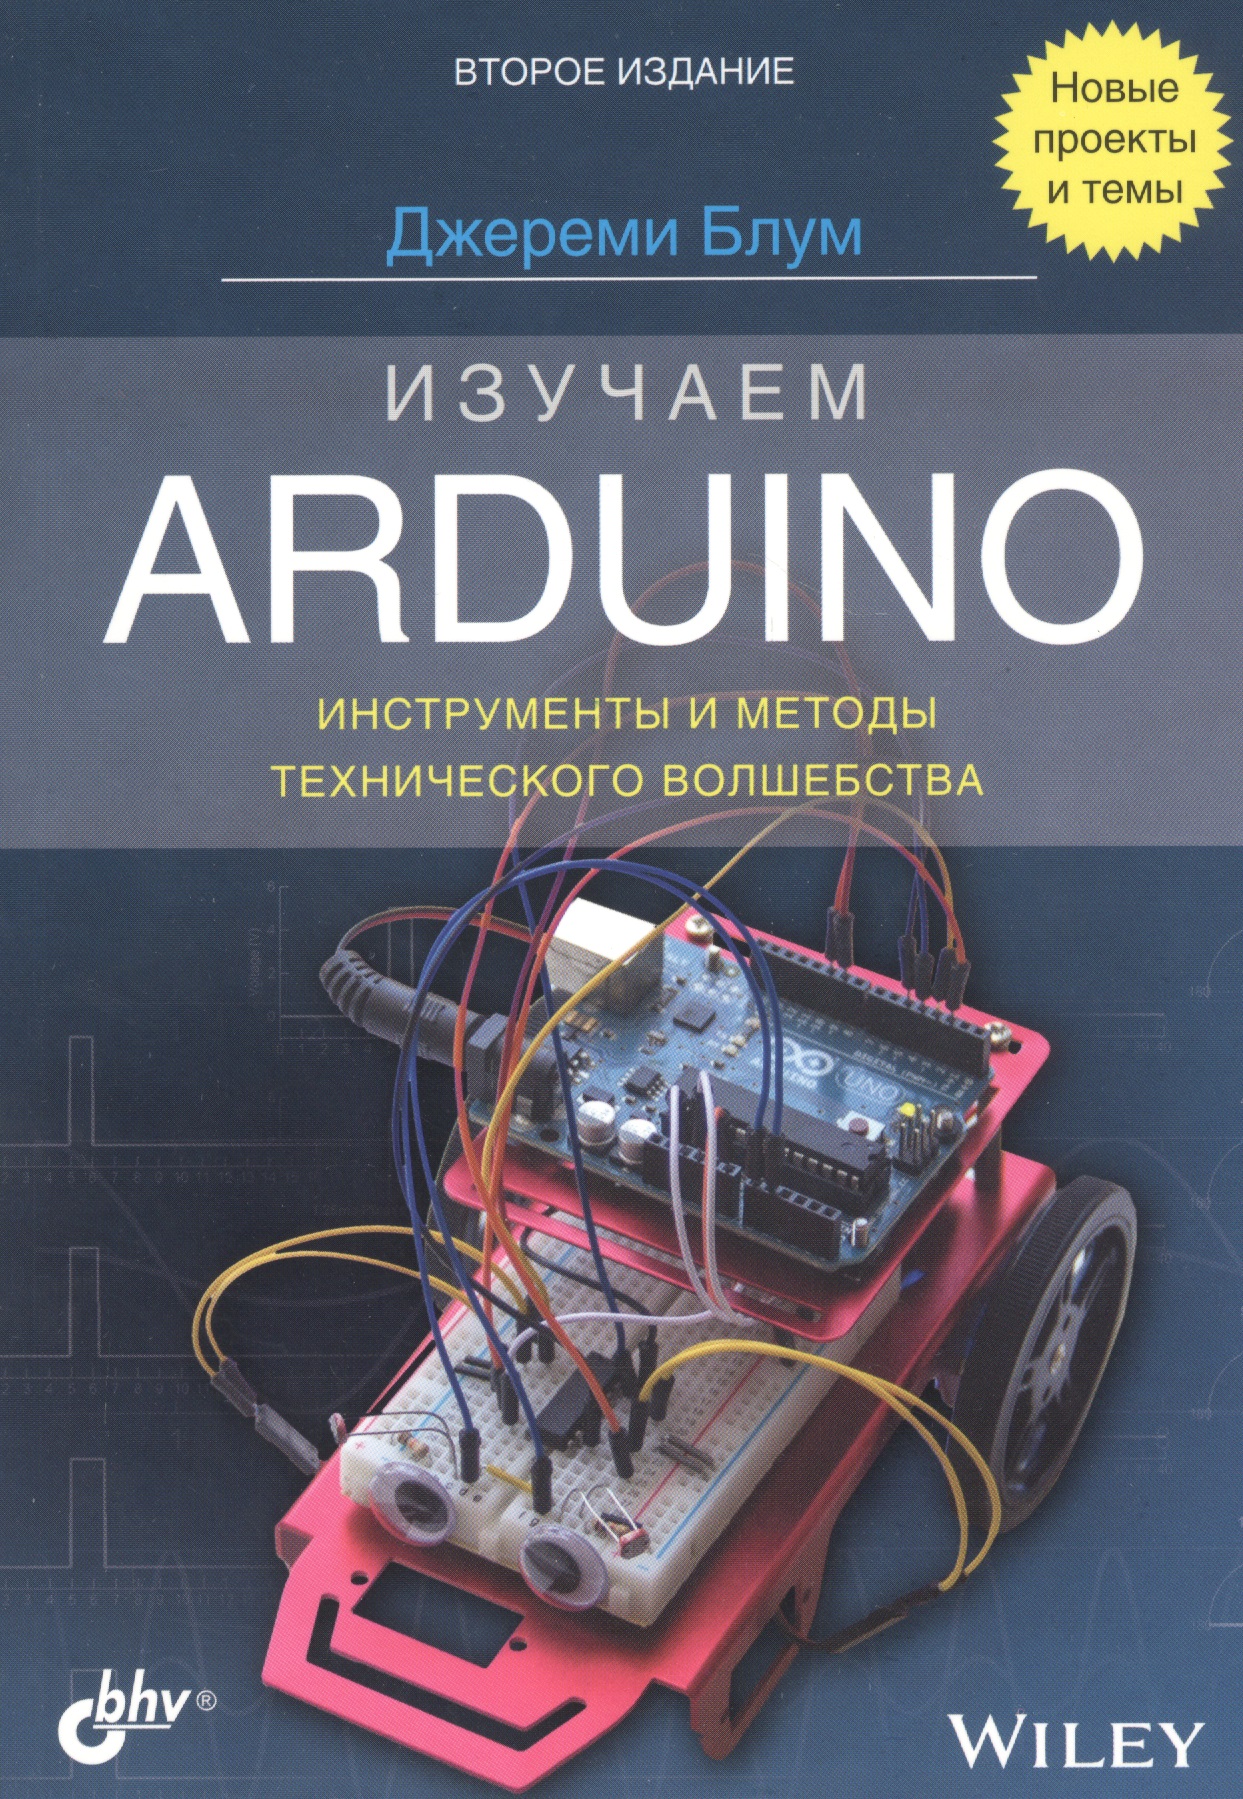 блюм джереми arduino набор базовый Блум Джереми Изучаем Arduino: инструменты и методы технического волшебства